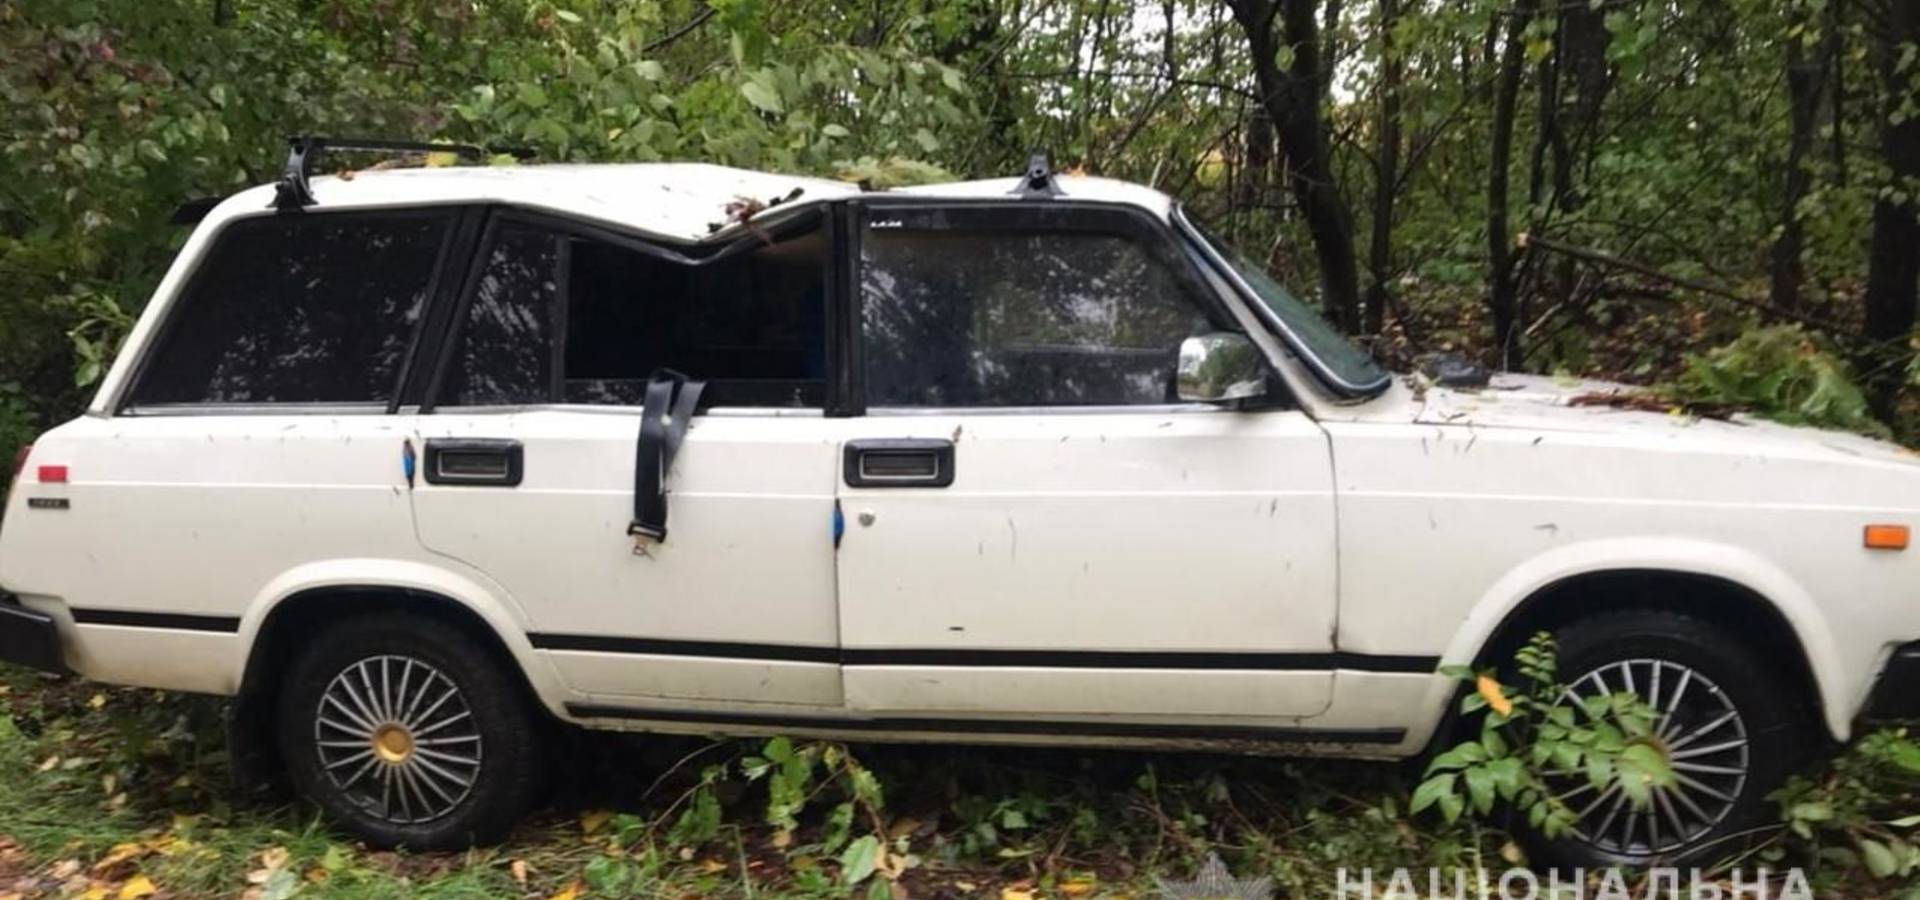 Внаслідок вчорашньої негоди на Вінниччині на автівку впало дерево, водій загинув